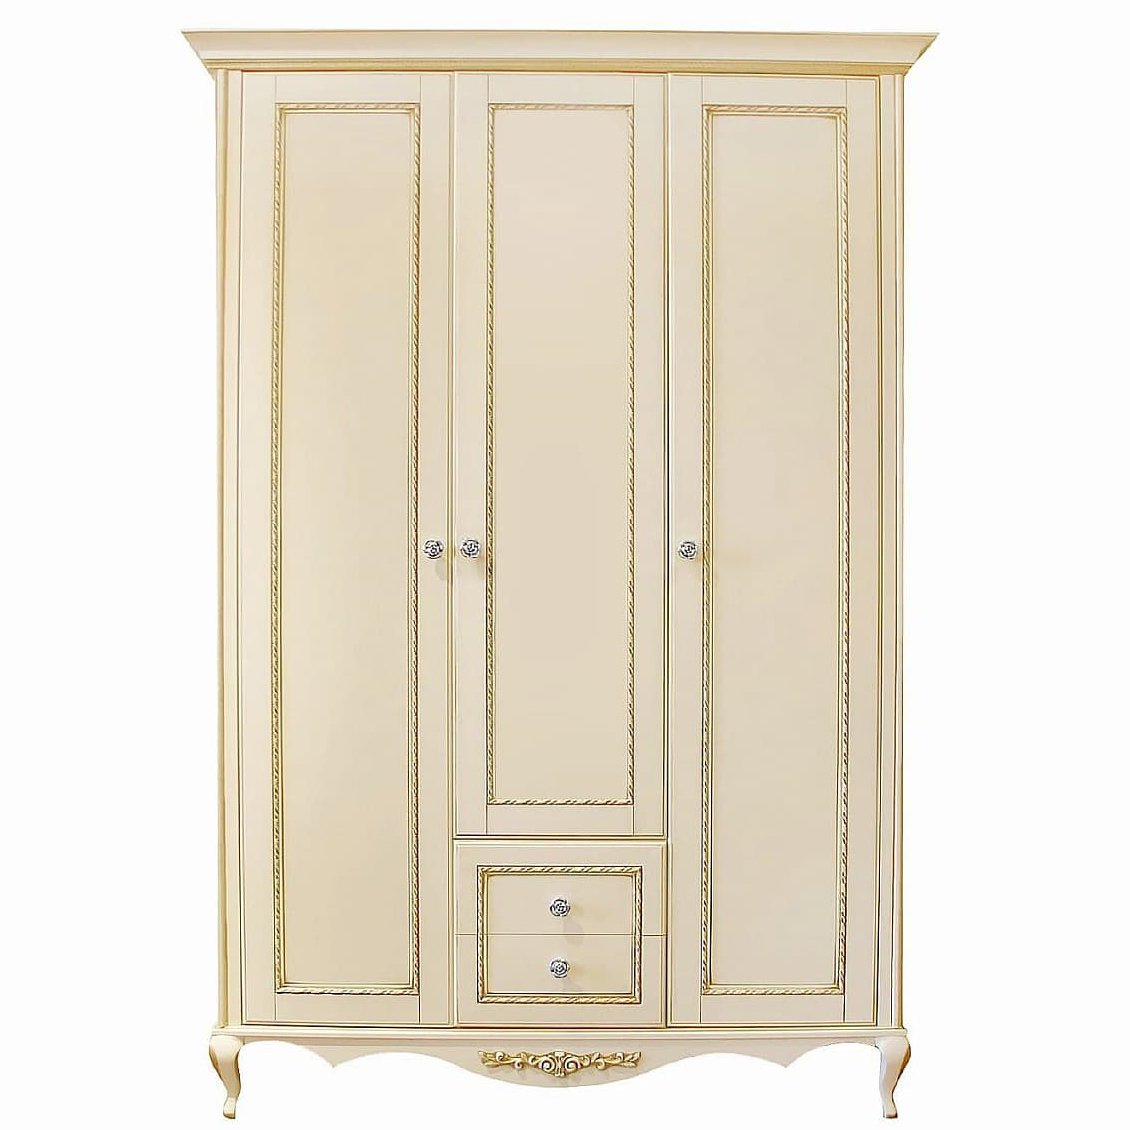 Шкаф платяной Timber Неаполь, 3-х дверный 159x65x227 см цвет: ваниль с золотом (T-523Д)T-523Д